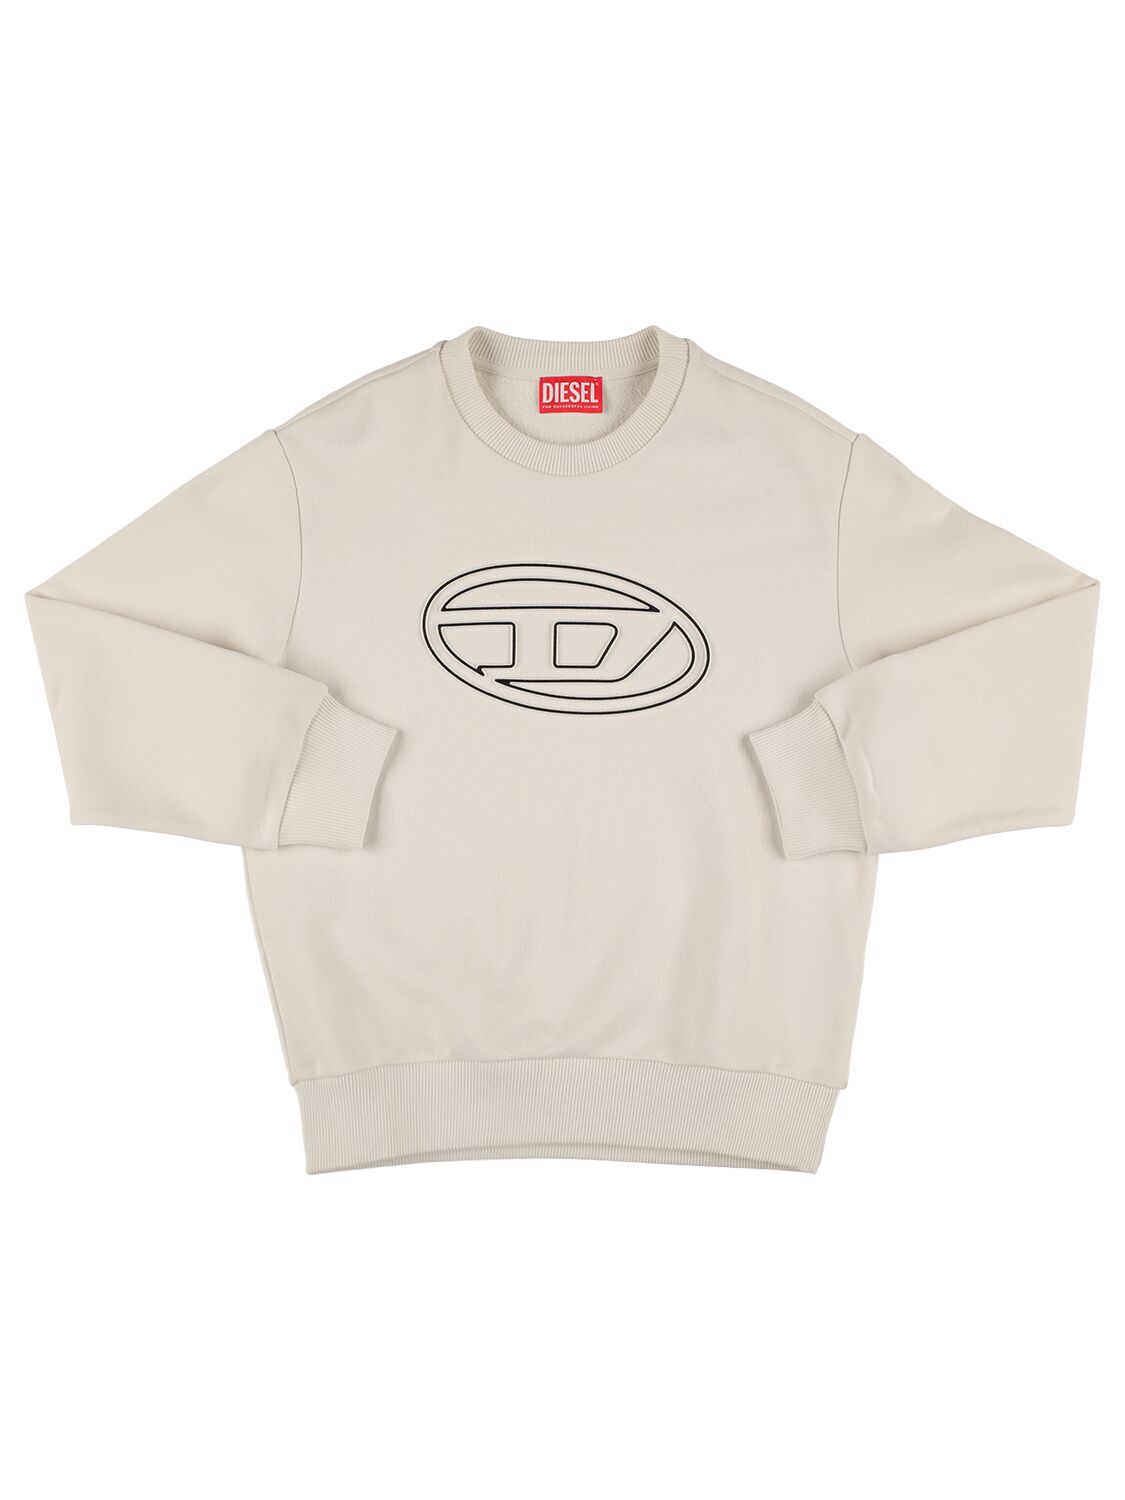 Diesel Kids' Cotton Logo Sweatshirt In White